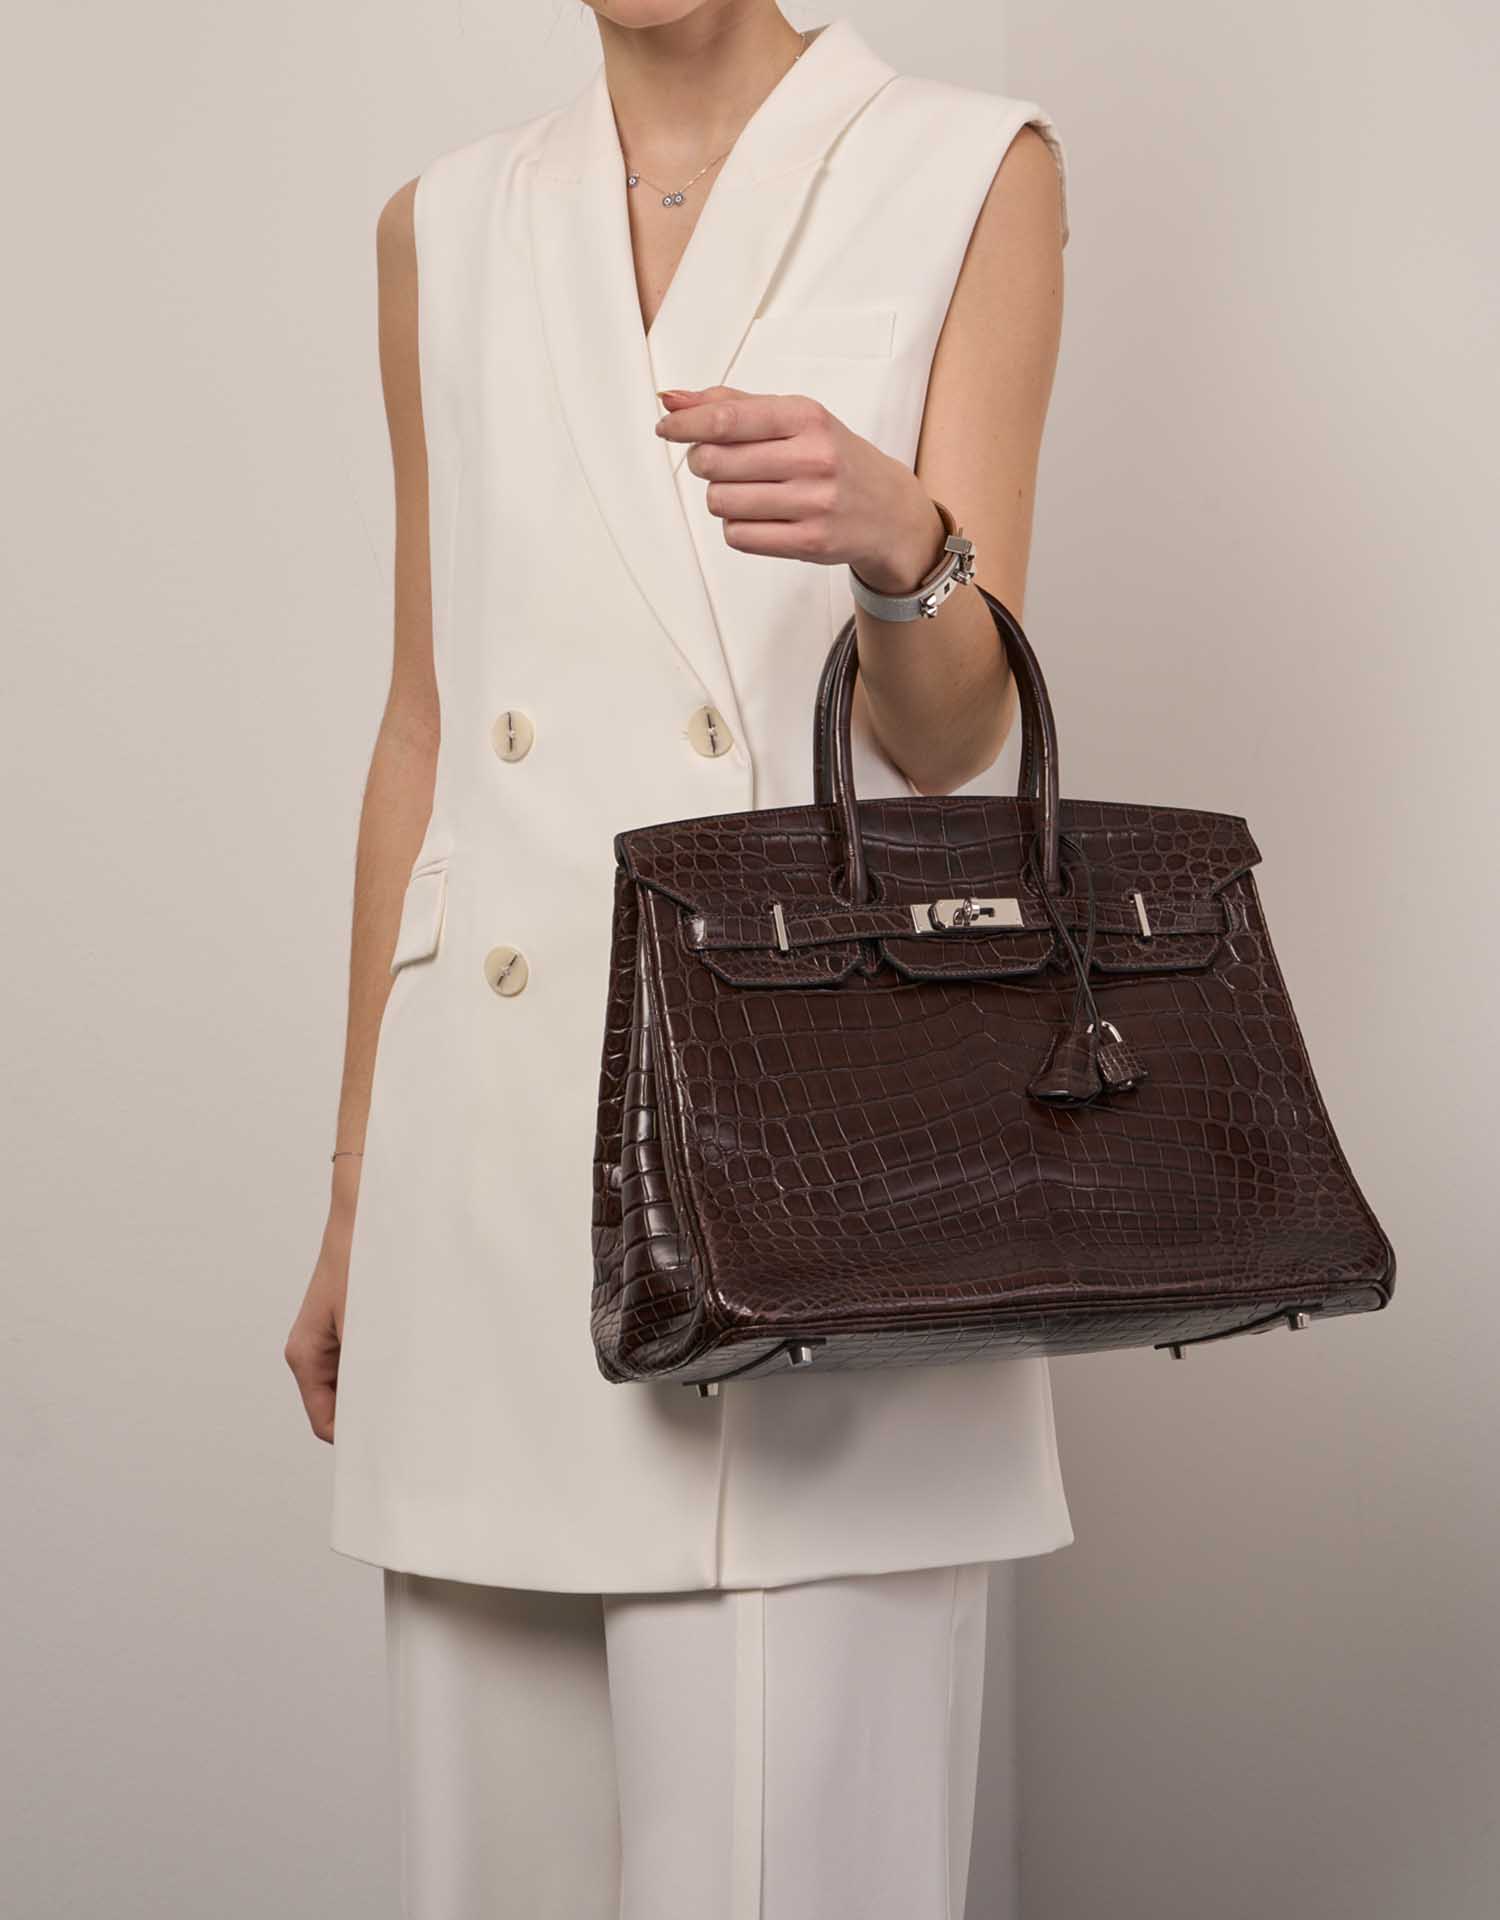 Hermès Birkin 35 GrisElephant Größen Getragen | Verkaufen Sie Ihre Designer-Tasche auf Saclab.com